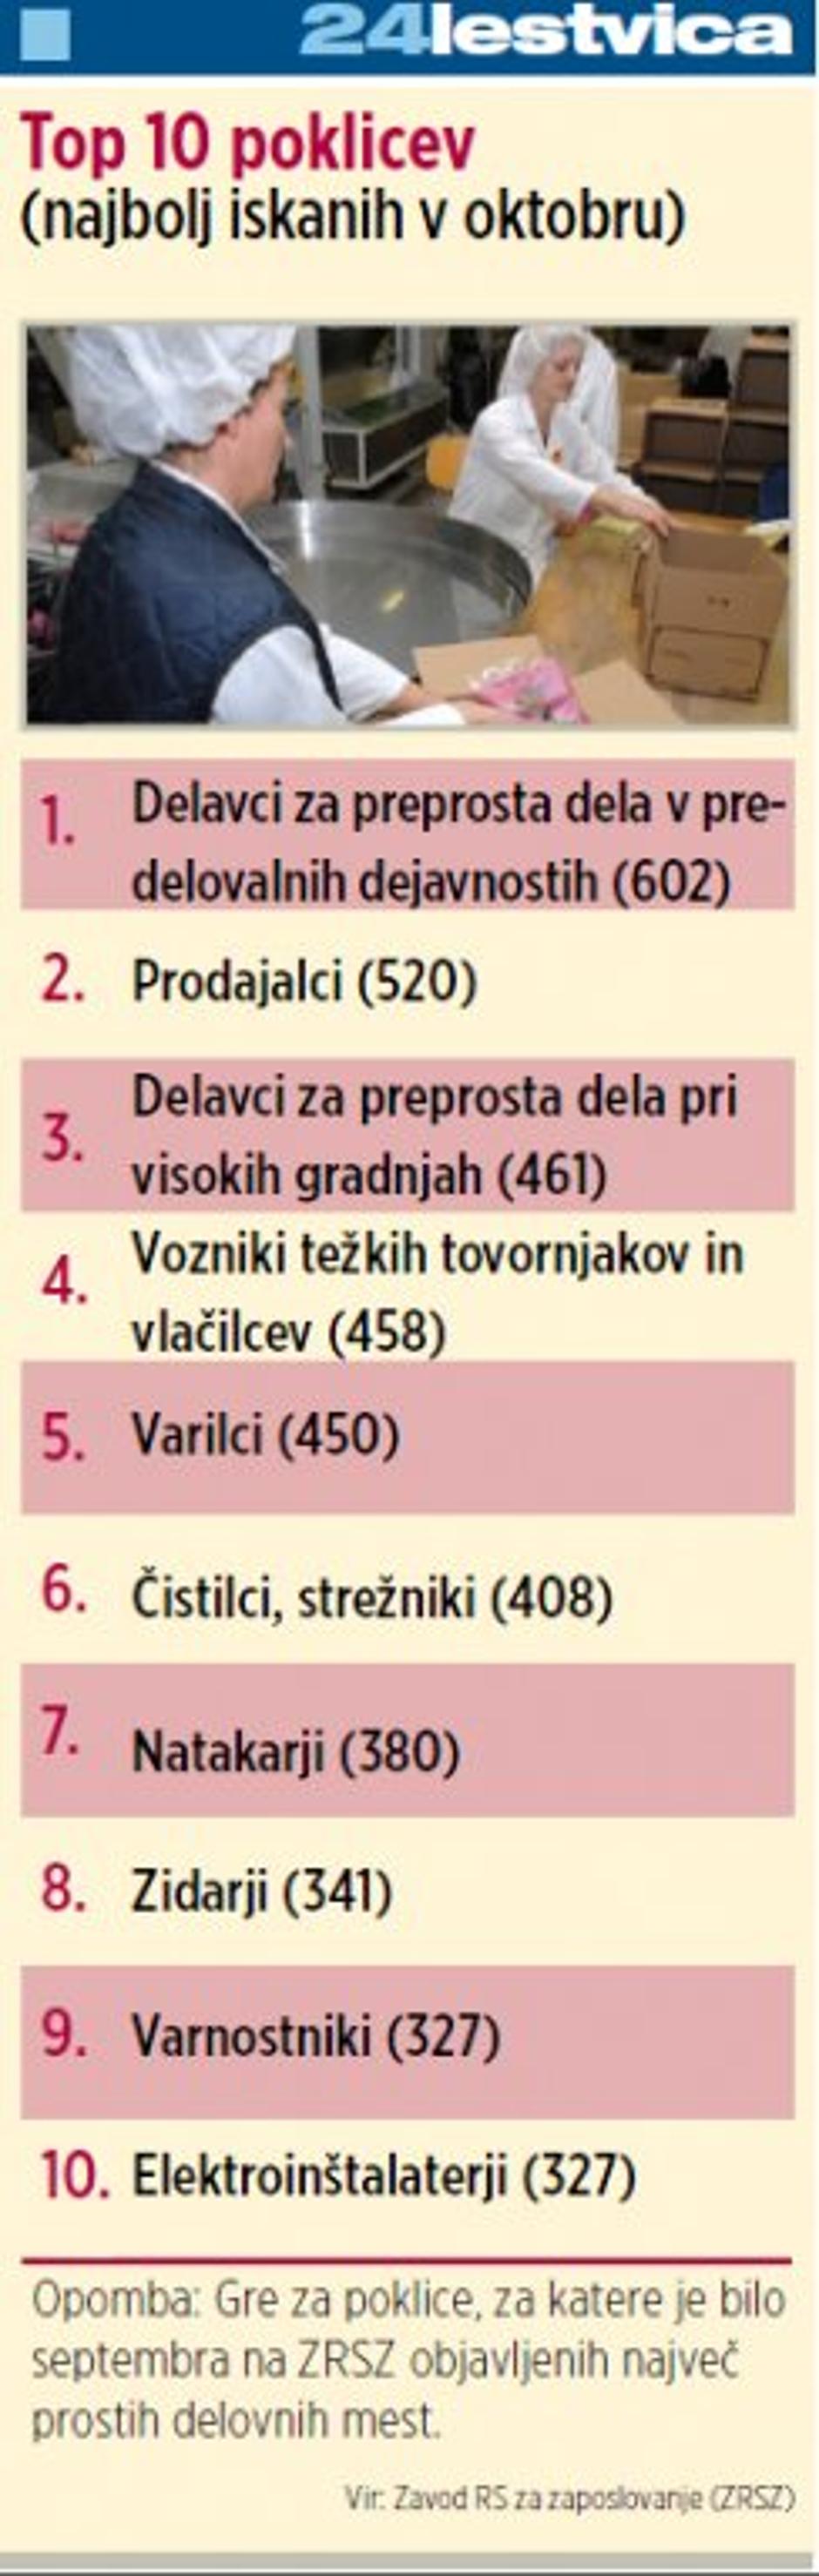 top 10 poklicev | Avtor: Žurnal24 main